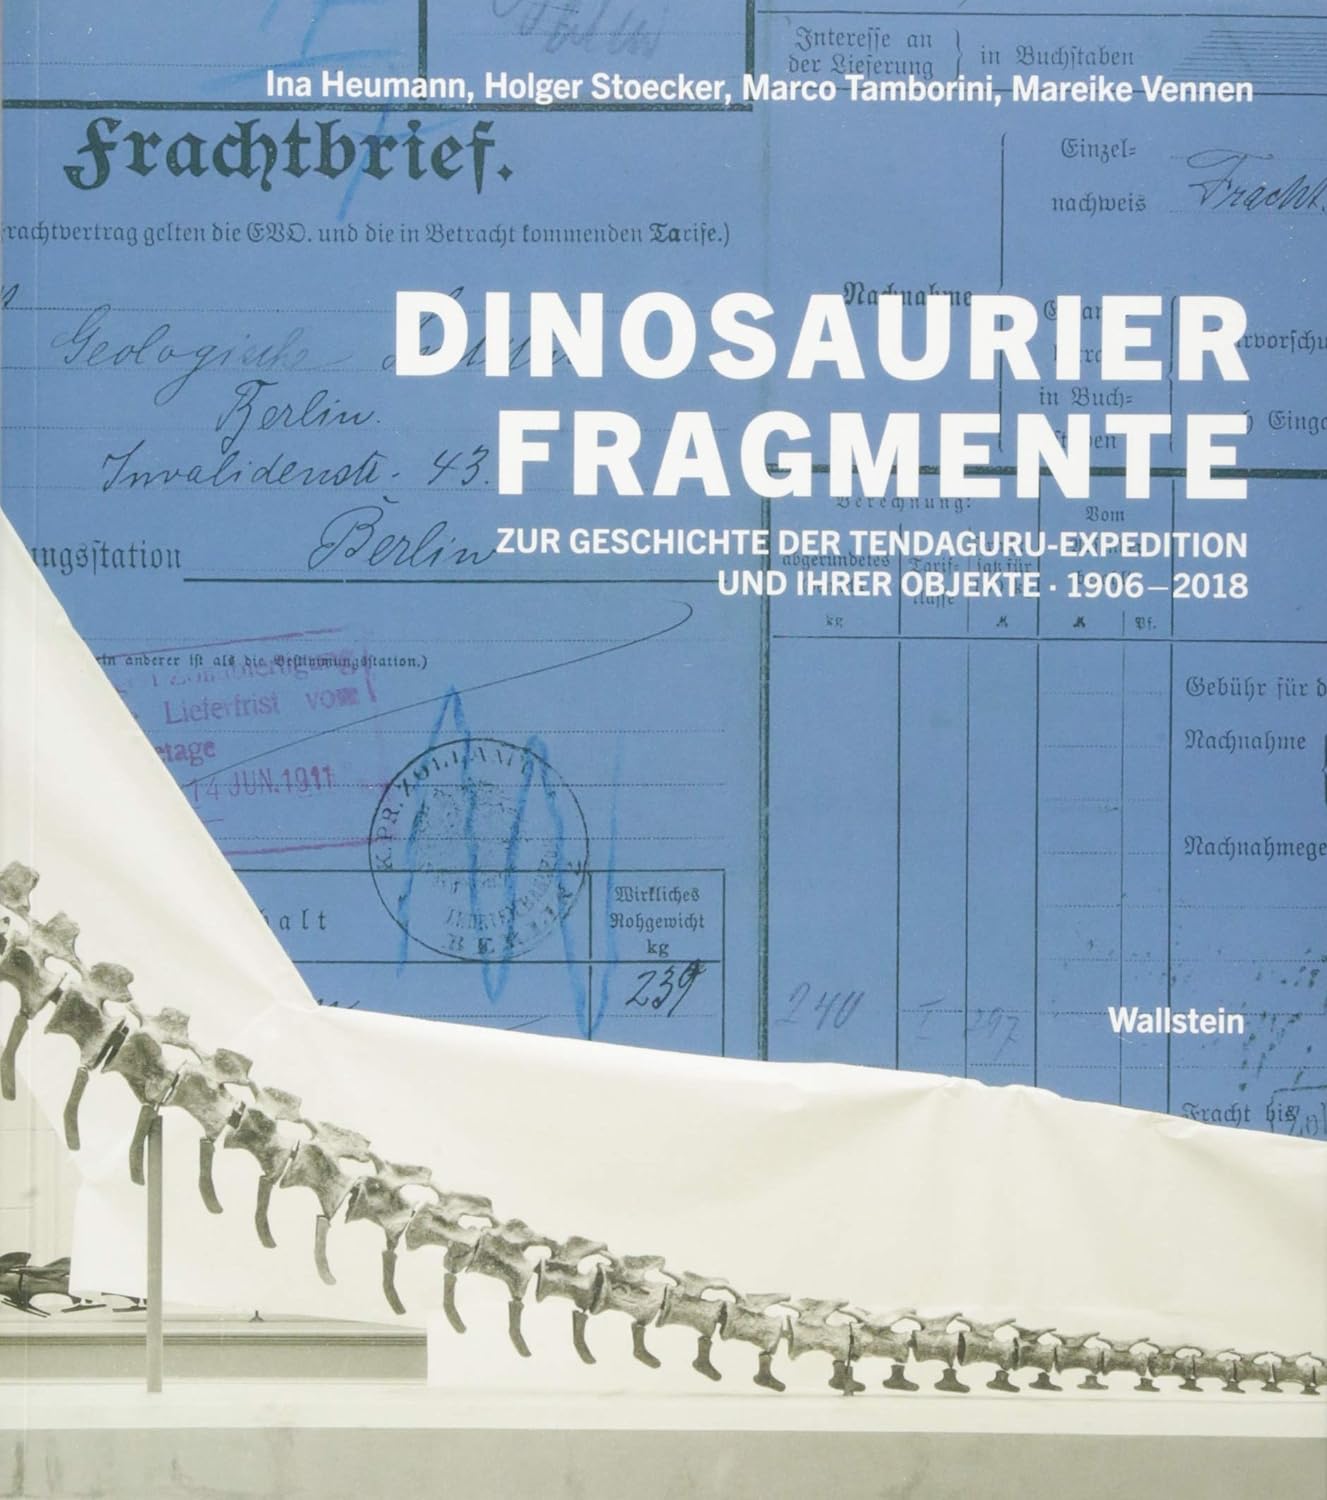 Book: Dinosaurierfragmente: Zur Geschichte der Tendaguru-Expedition und ihrer Objekte, 1906-2018. ISBN: 3835332538